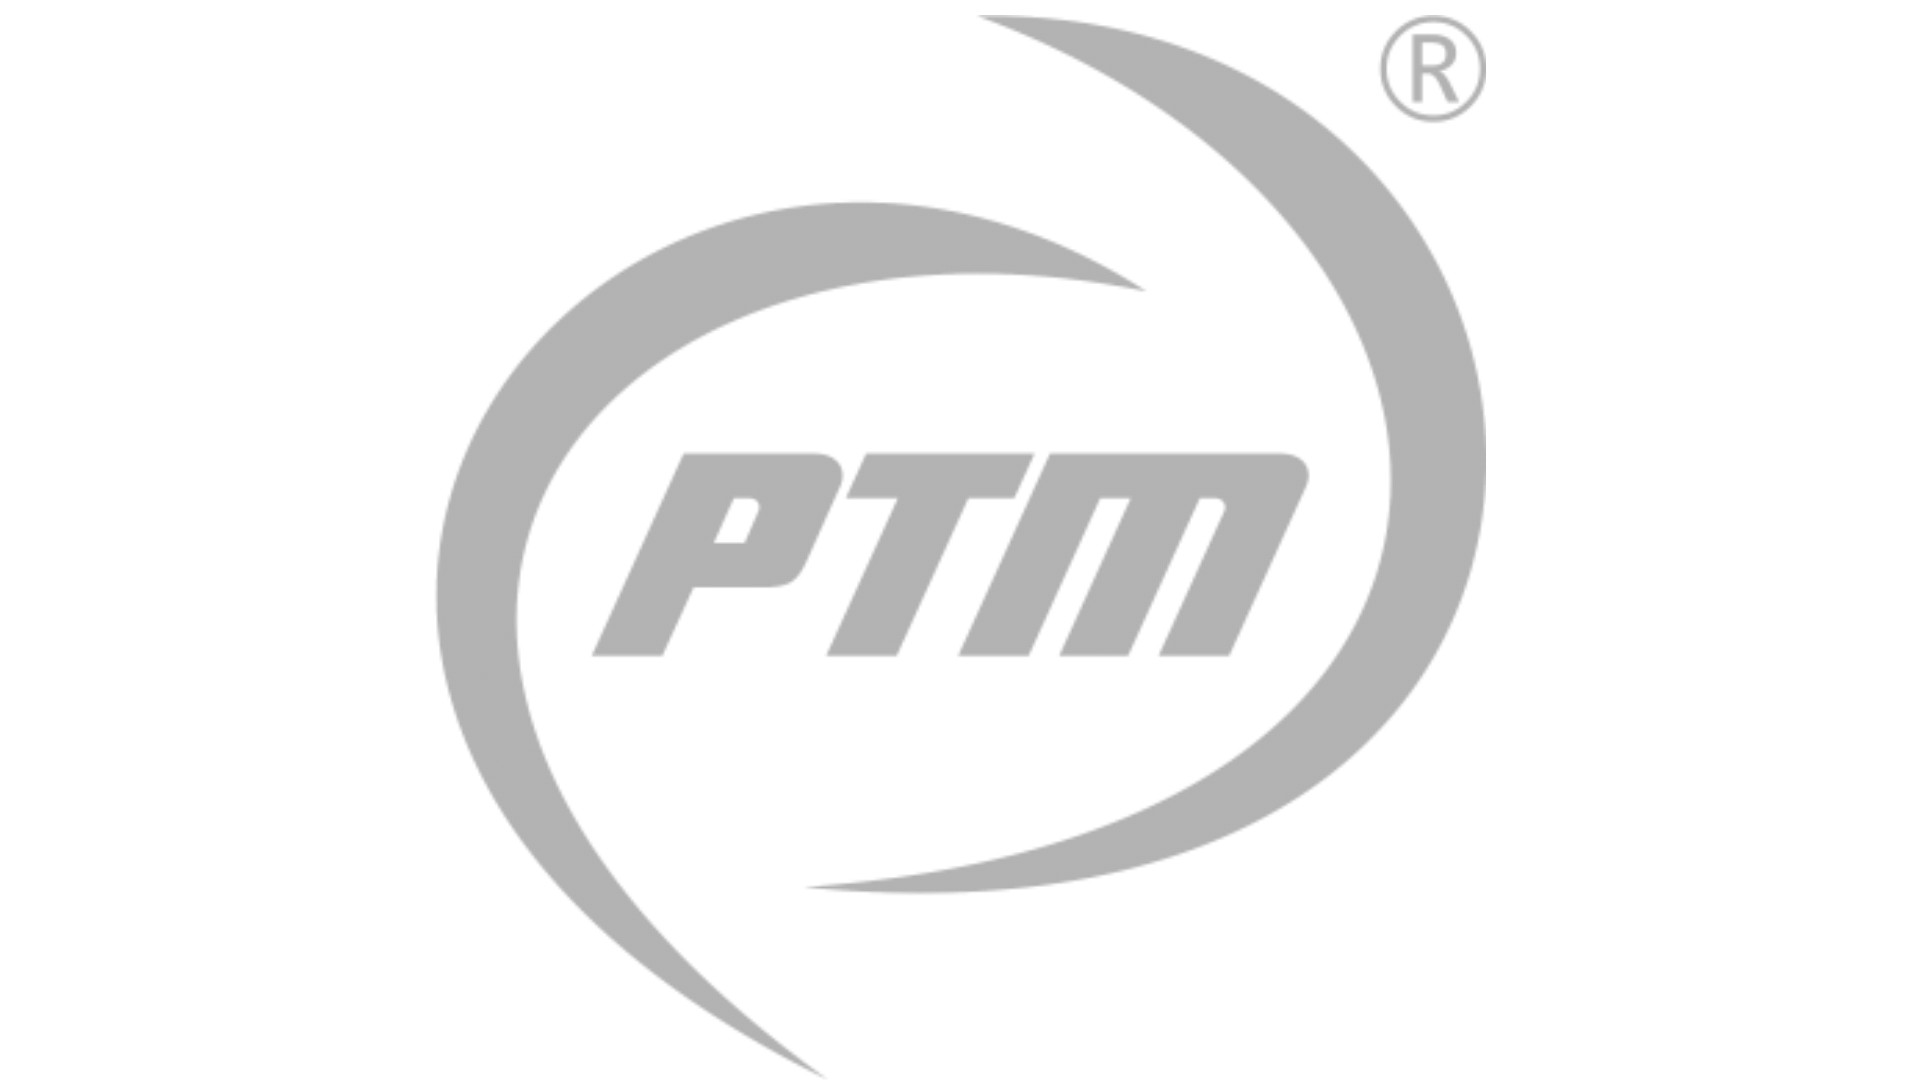 Logo PTM